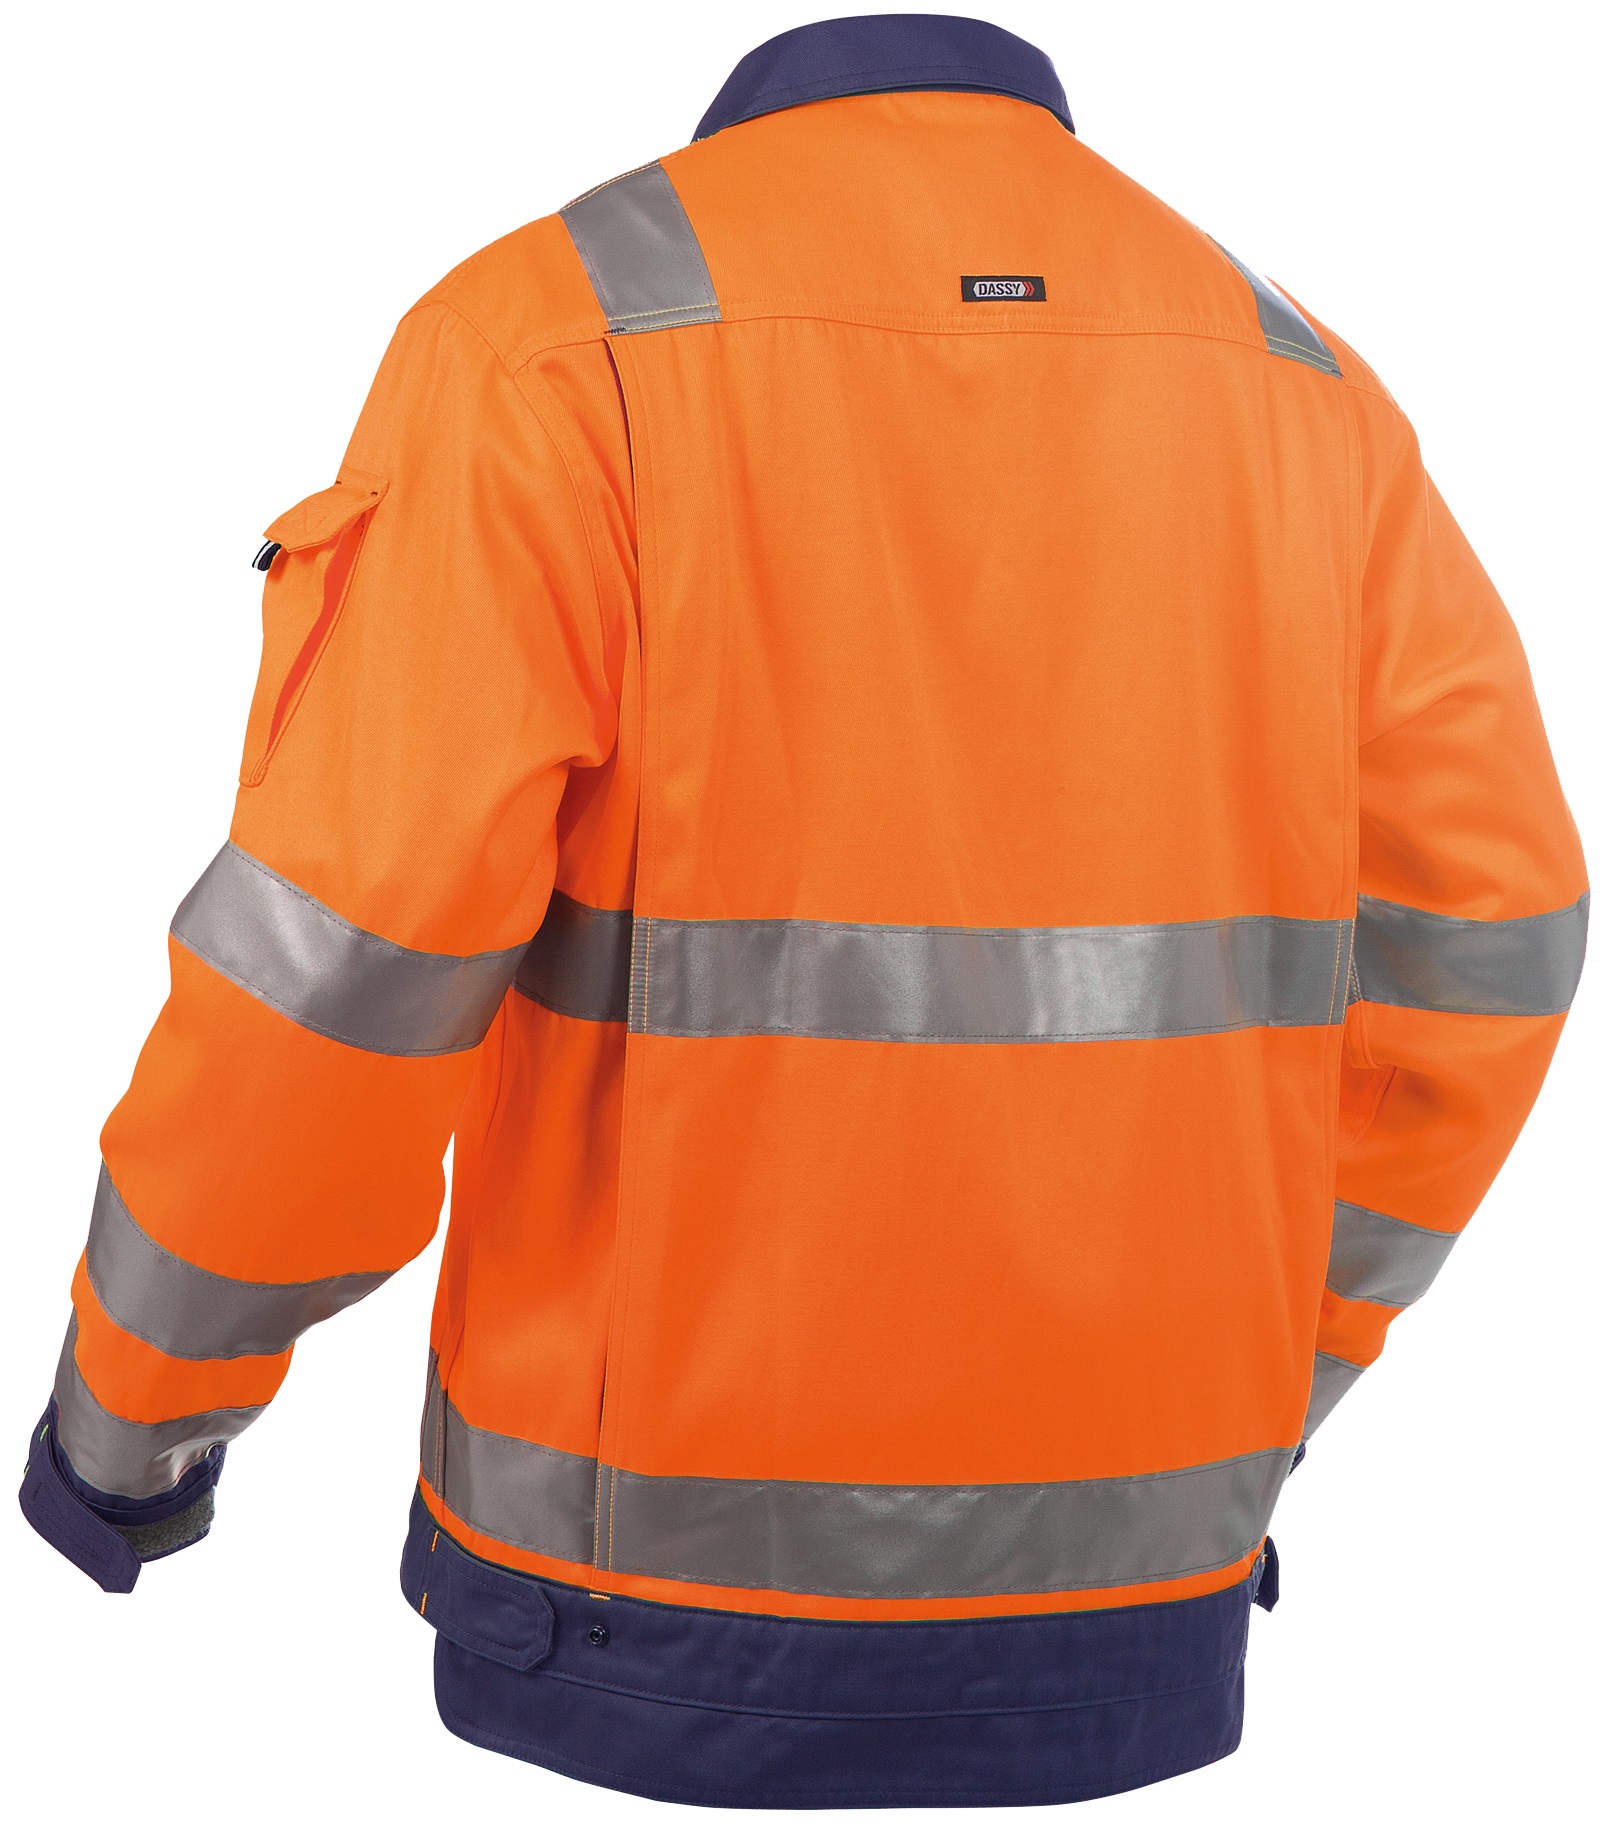 DASSY Warnschutz-Arbeitsjacke in vielen Farben